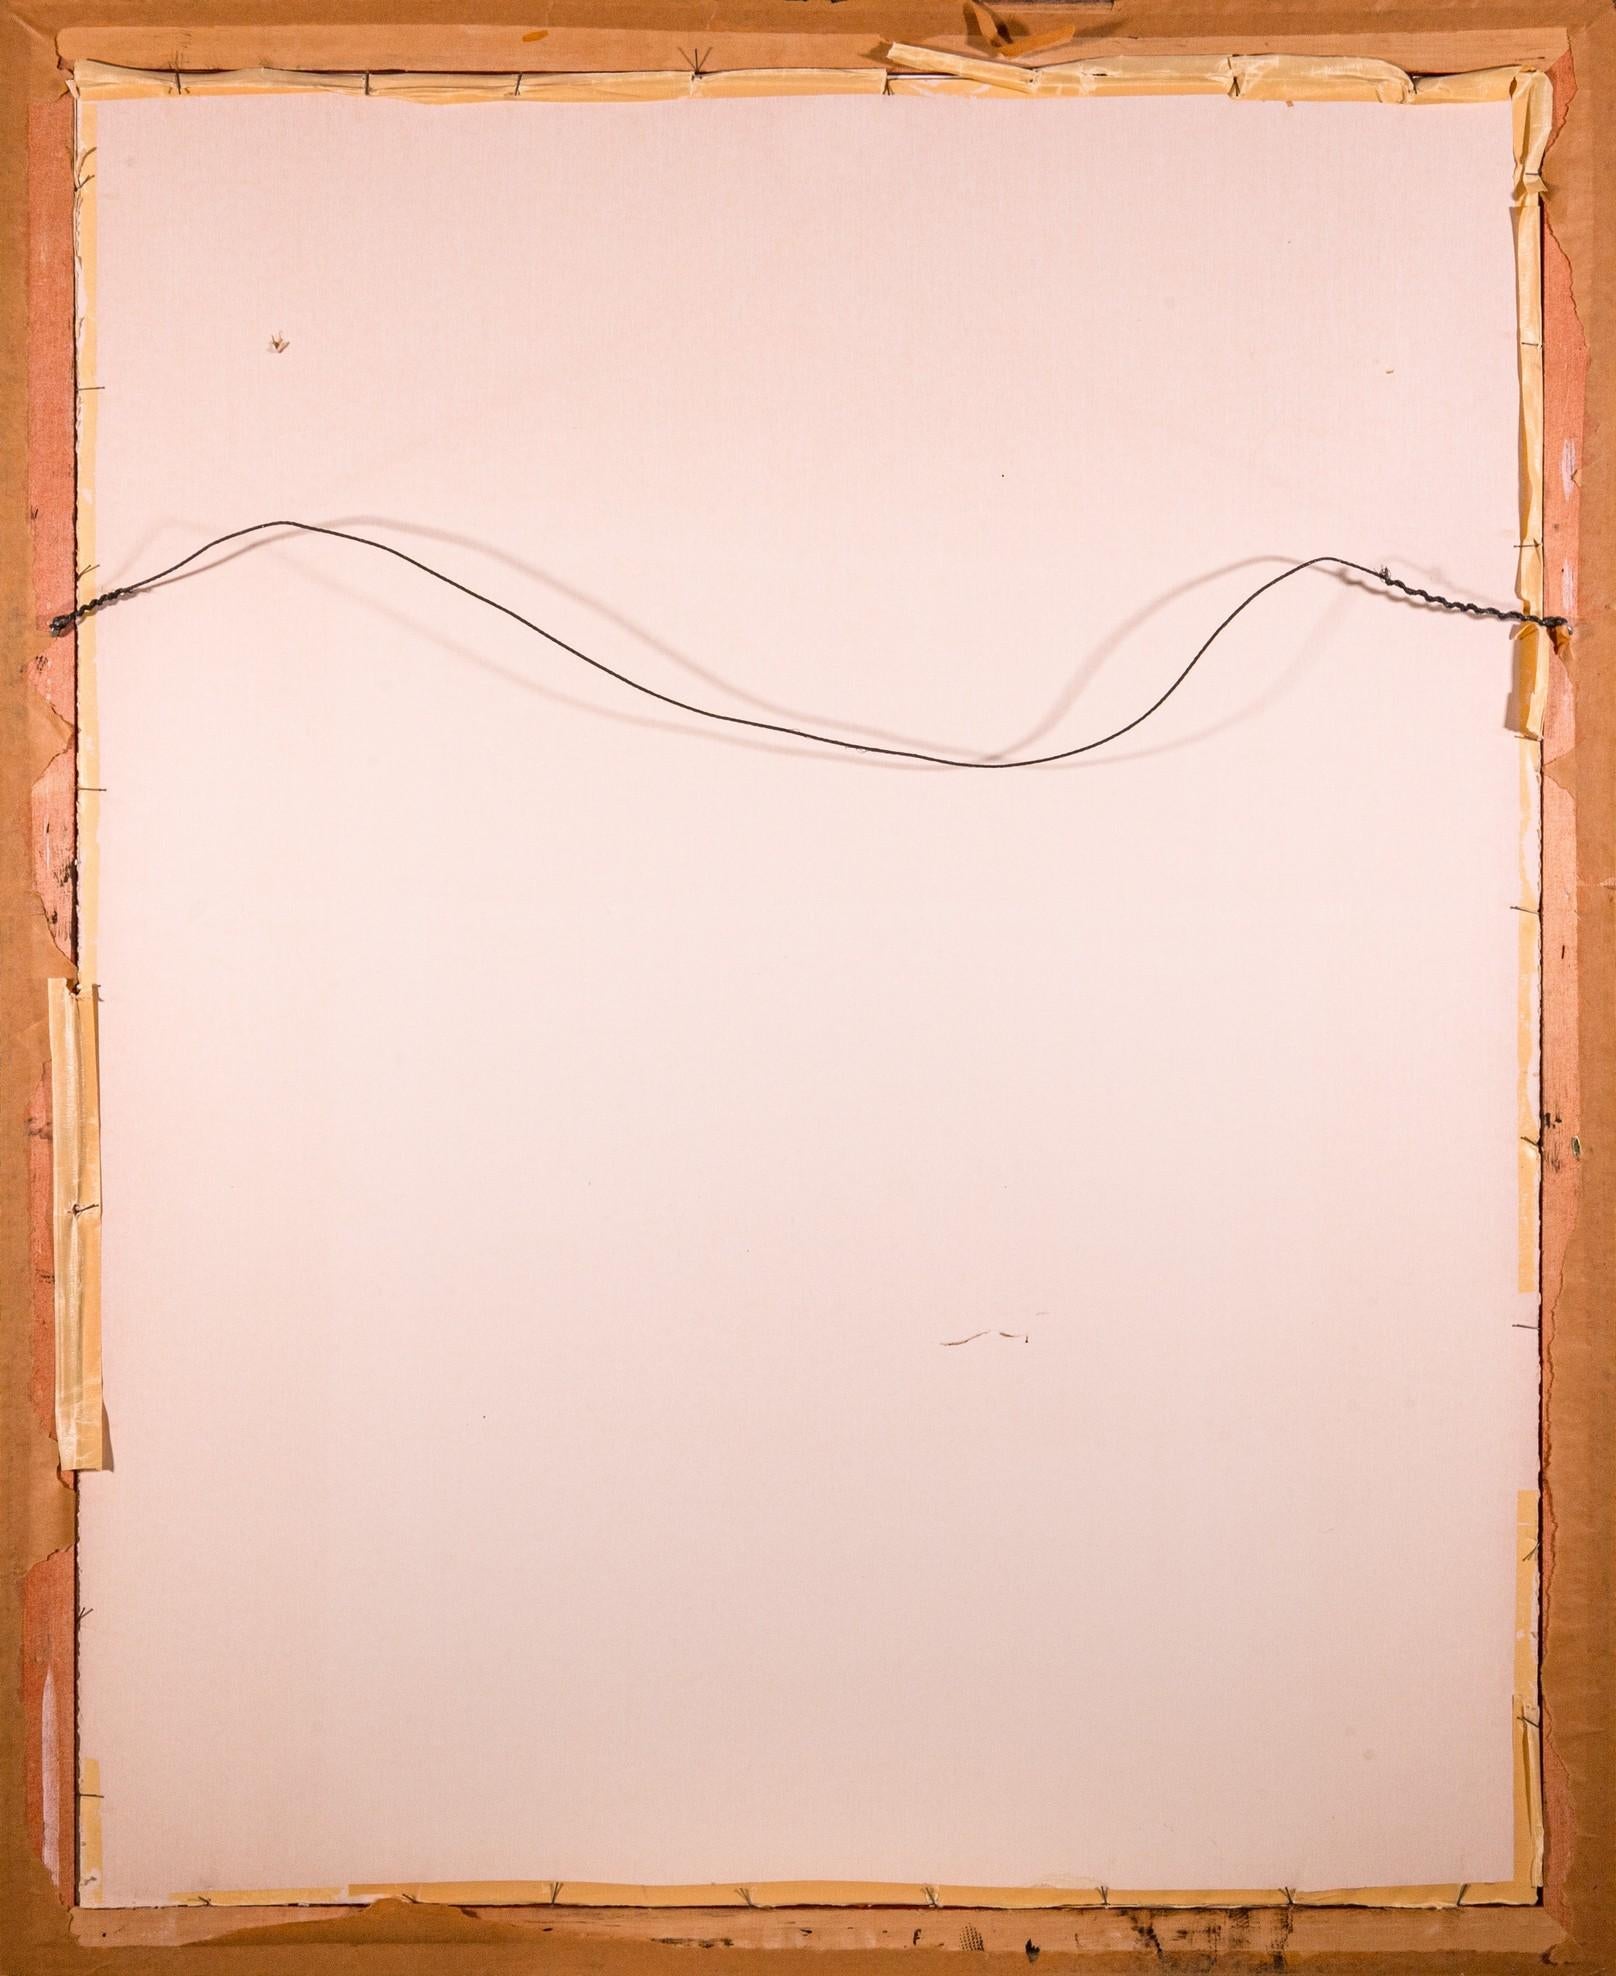 Salvador Dali Transcendent Passage Signed Modern Lithograph on Paper I 313/350 8